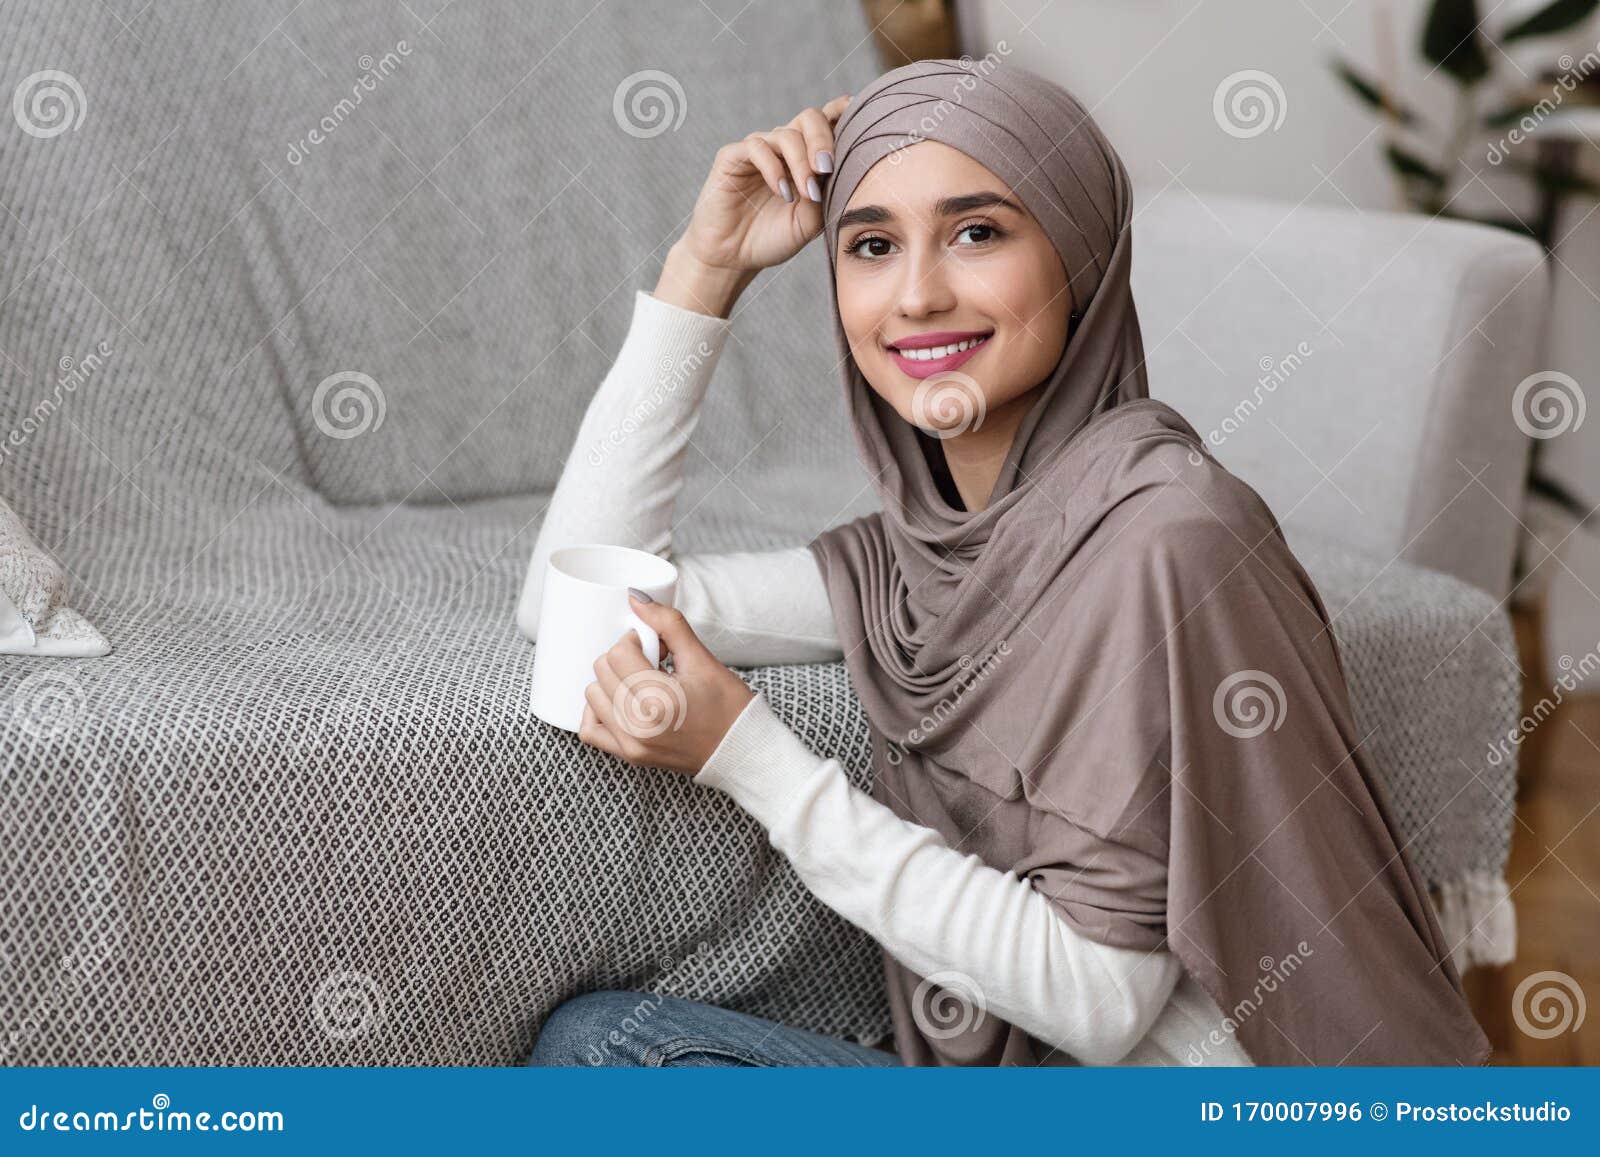 Girl hot muslim Hot Muslim